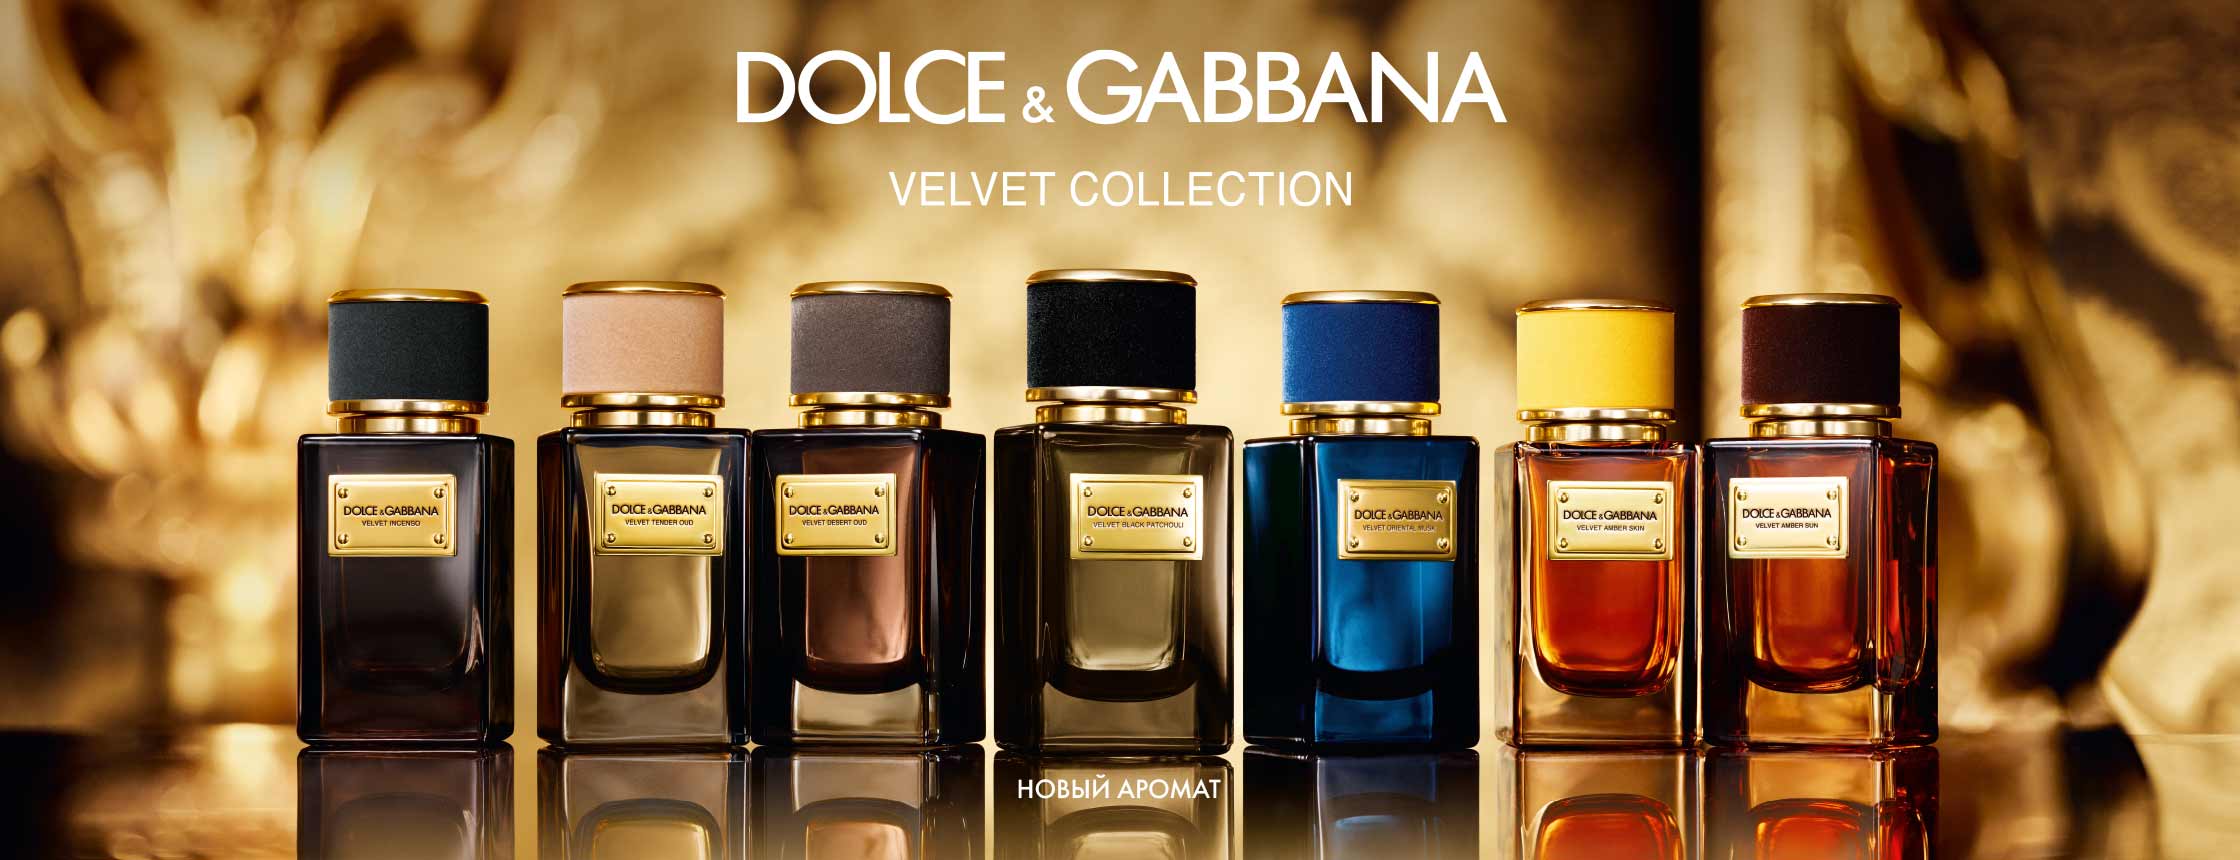 Дольче габбана косметика. Dolce&Gabbana Velvet collection Black Patchouli. Dolce & Gabbana Velvet Black Patchouli. Дольче Габбана вельвет Инсенсо. Dolce Gabbana Patchouli.